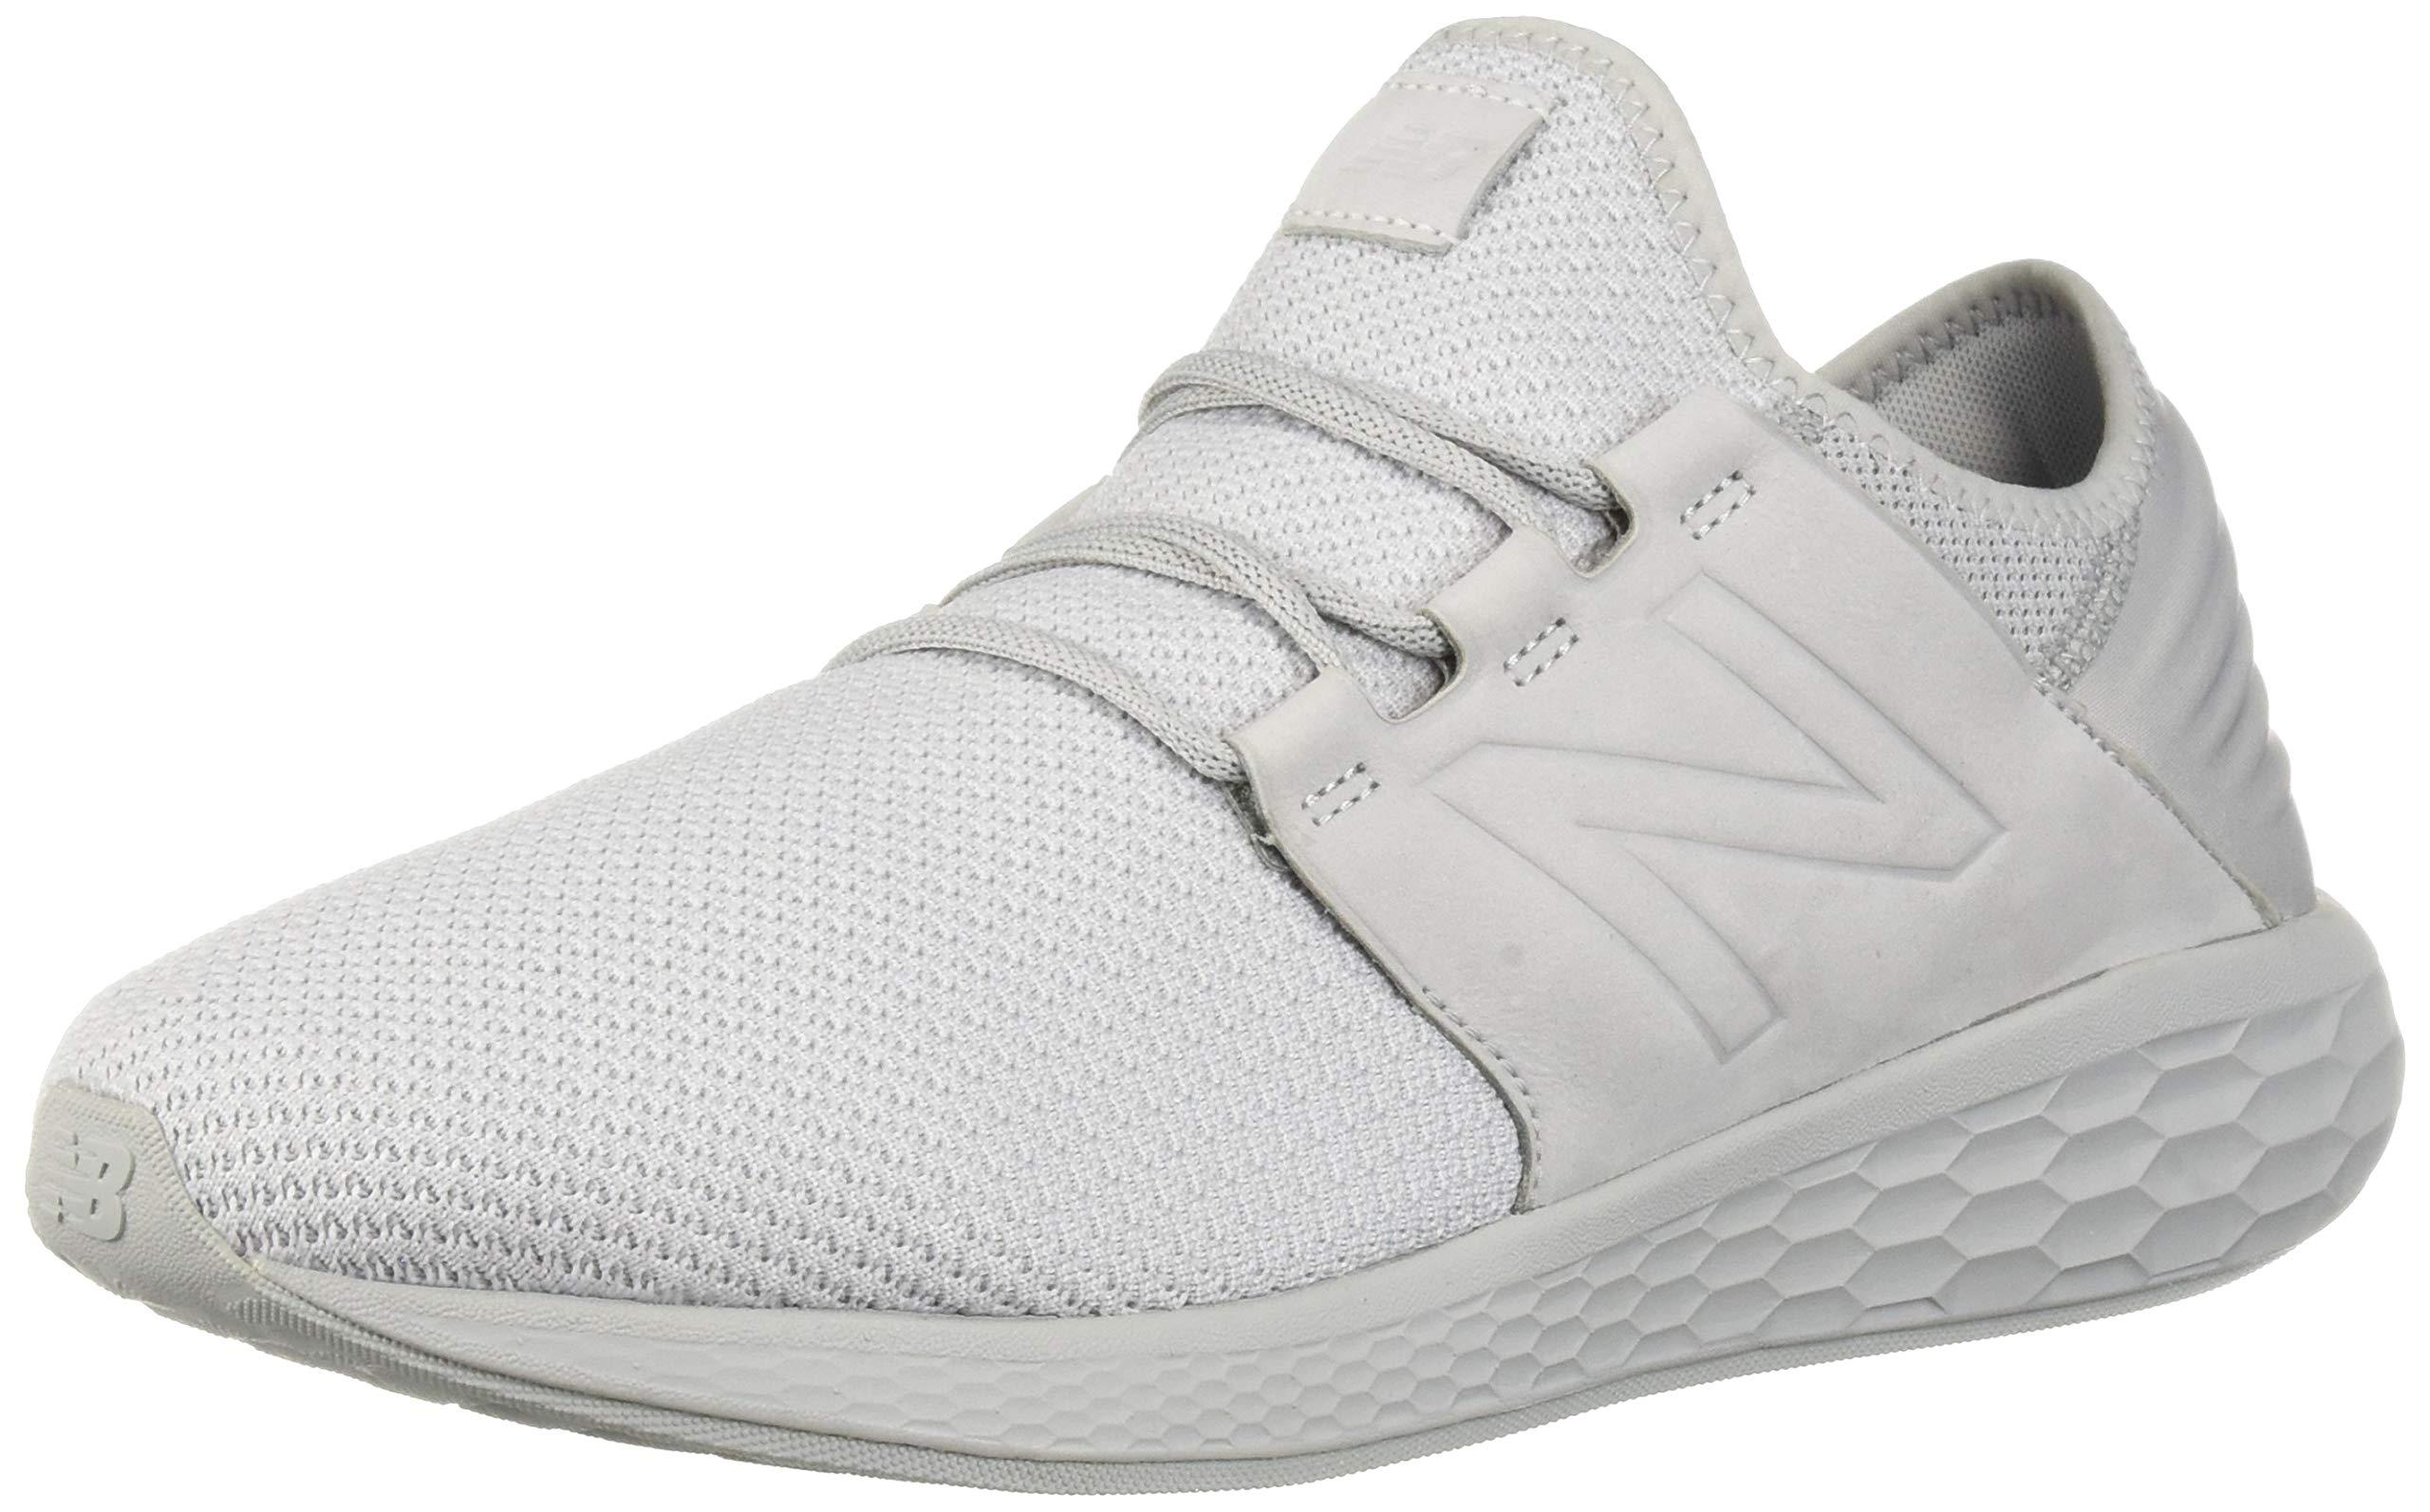 New Balance Leather Fresh Foam Cruz V2 Sneaker in White for Men - Lyst